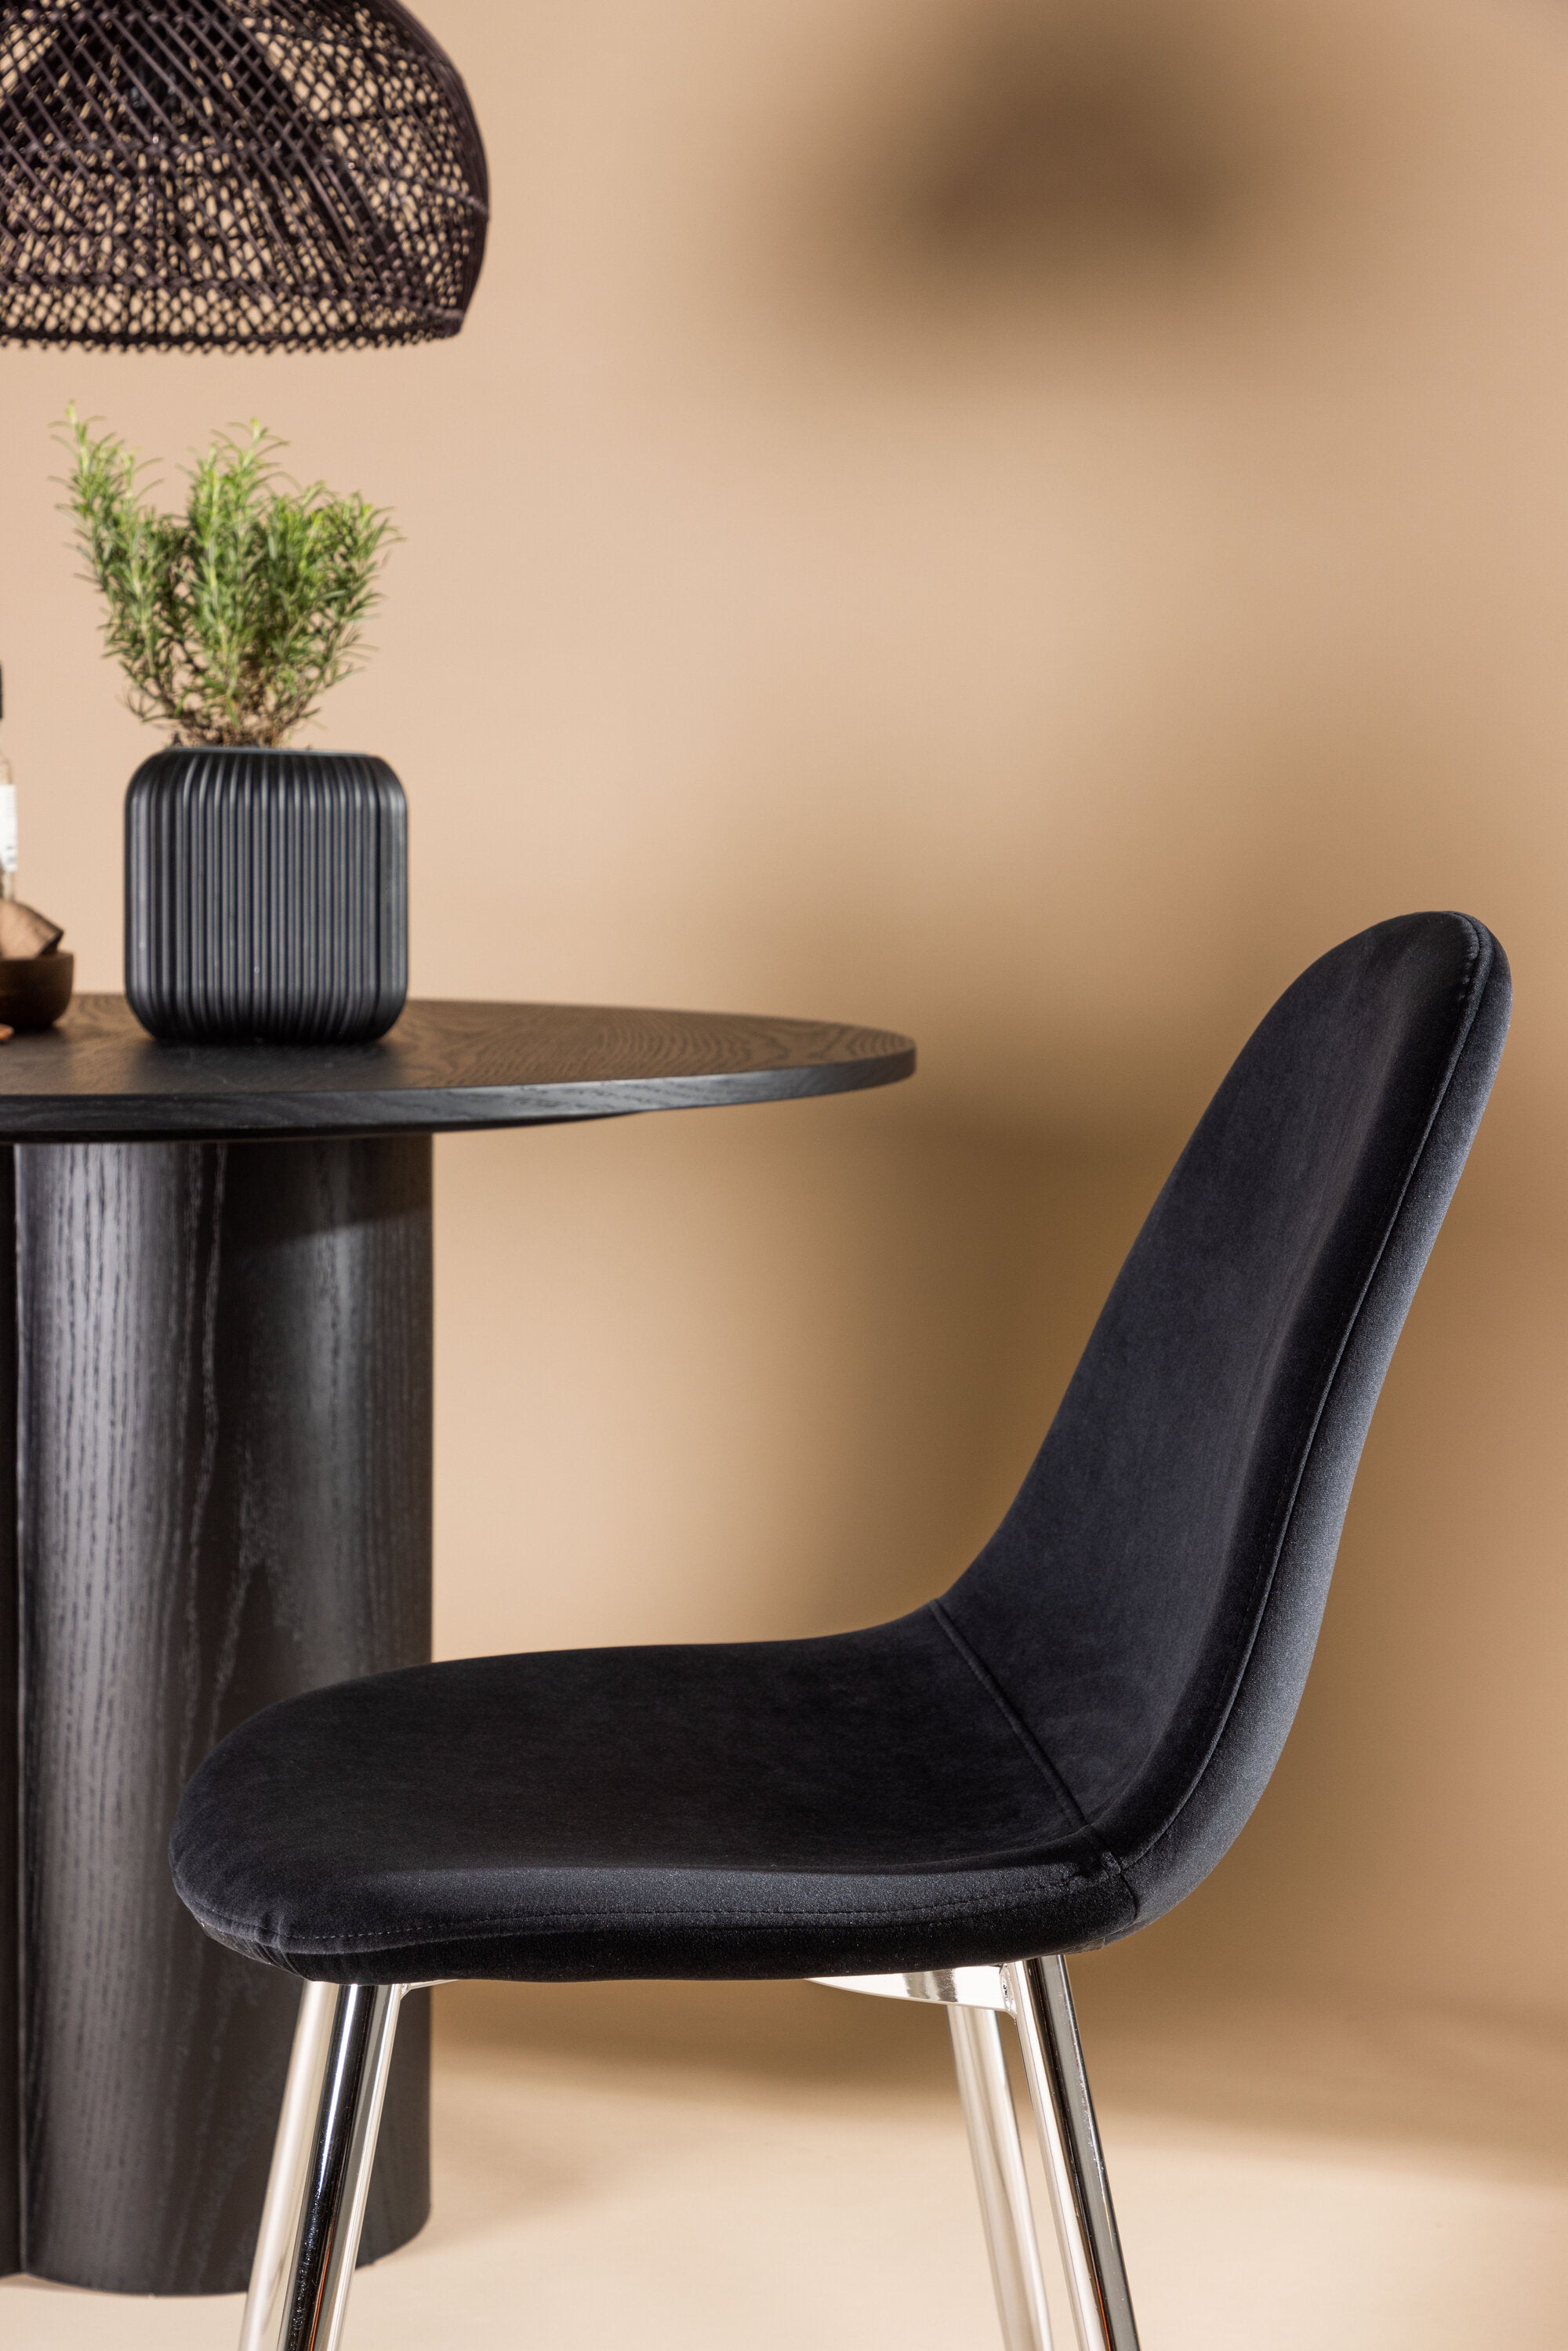 Polar Stuhl in Schwarz/Chrome präsentiert im Onlineshop von KAQTU Design AG. Stuhl ist von Venture Home